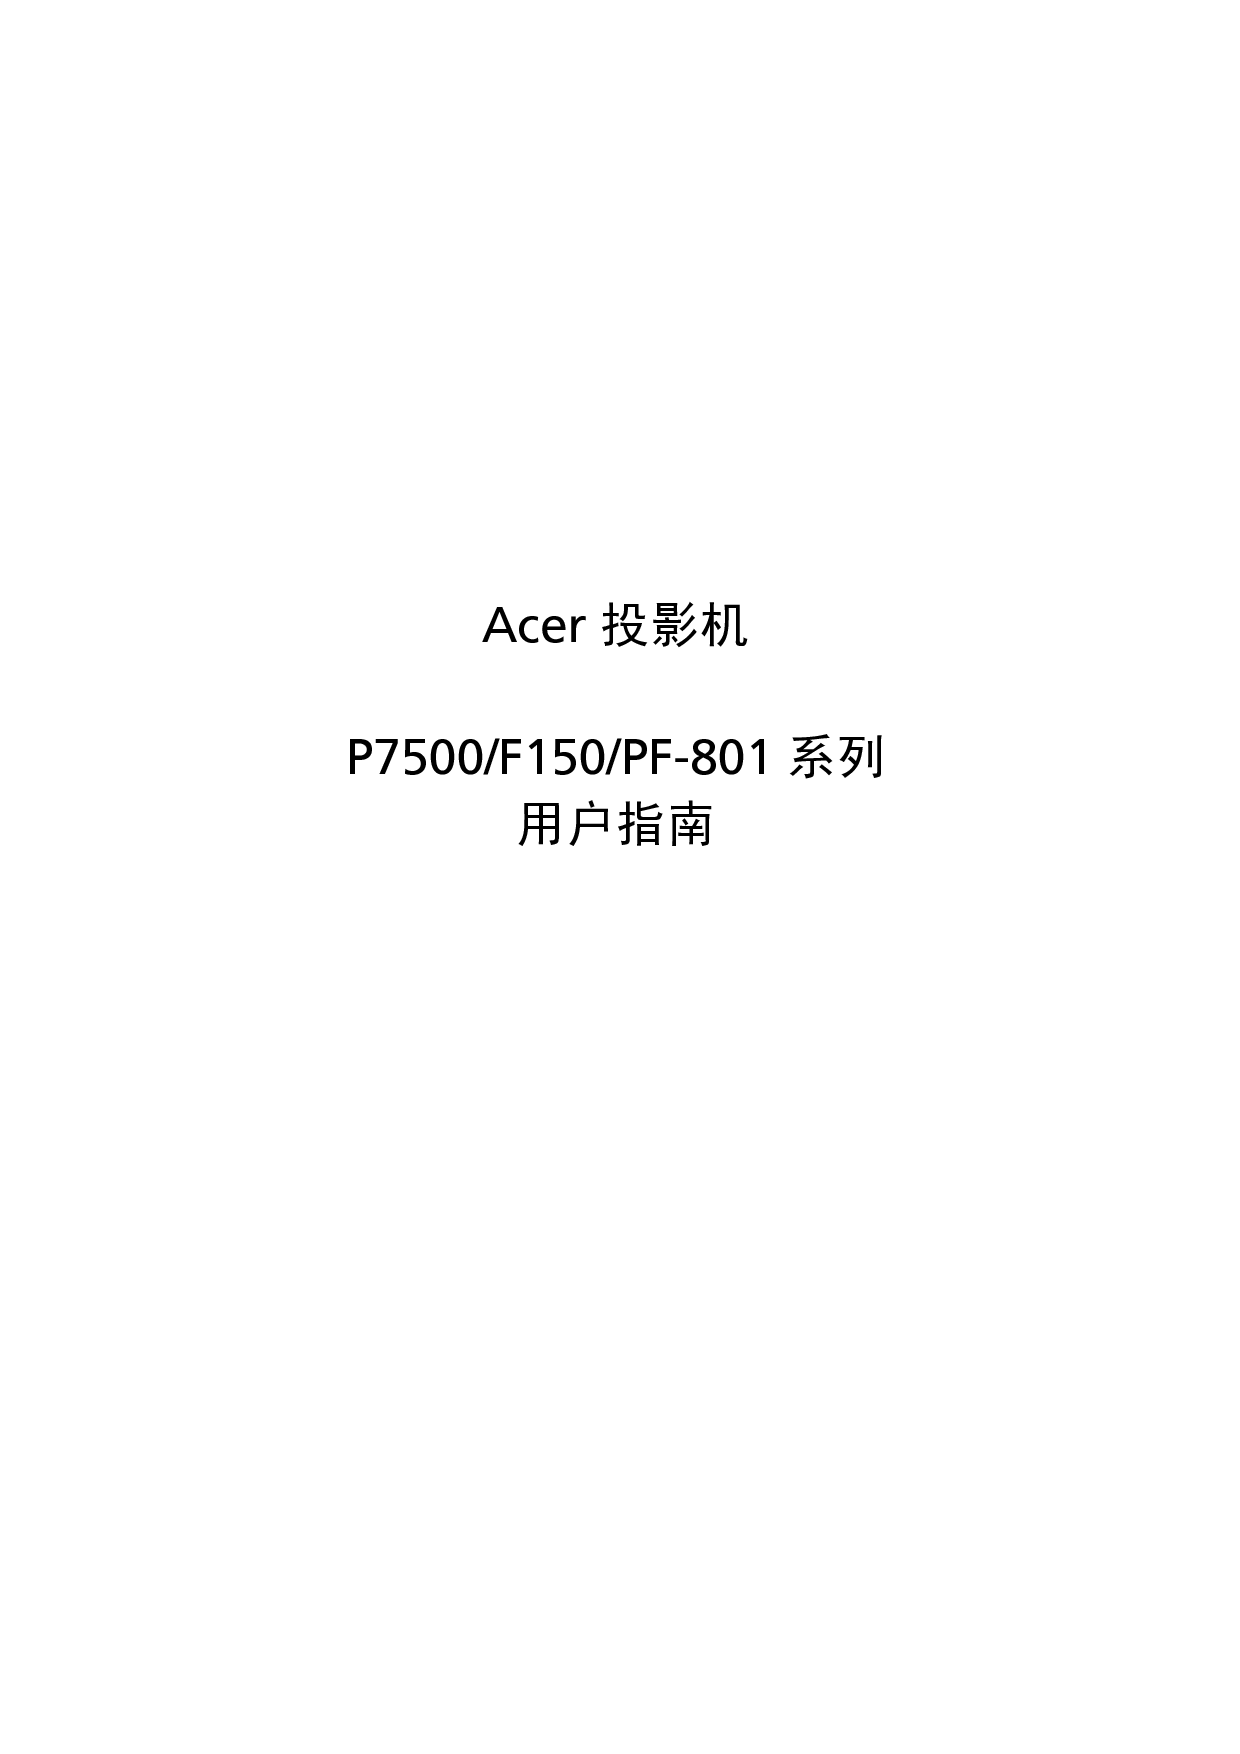 宏碁 Acer F150, P7500, PF-801 用户手册 封面